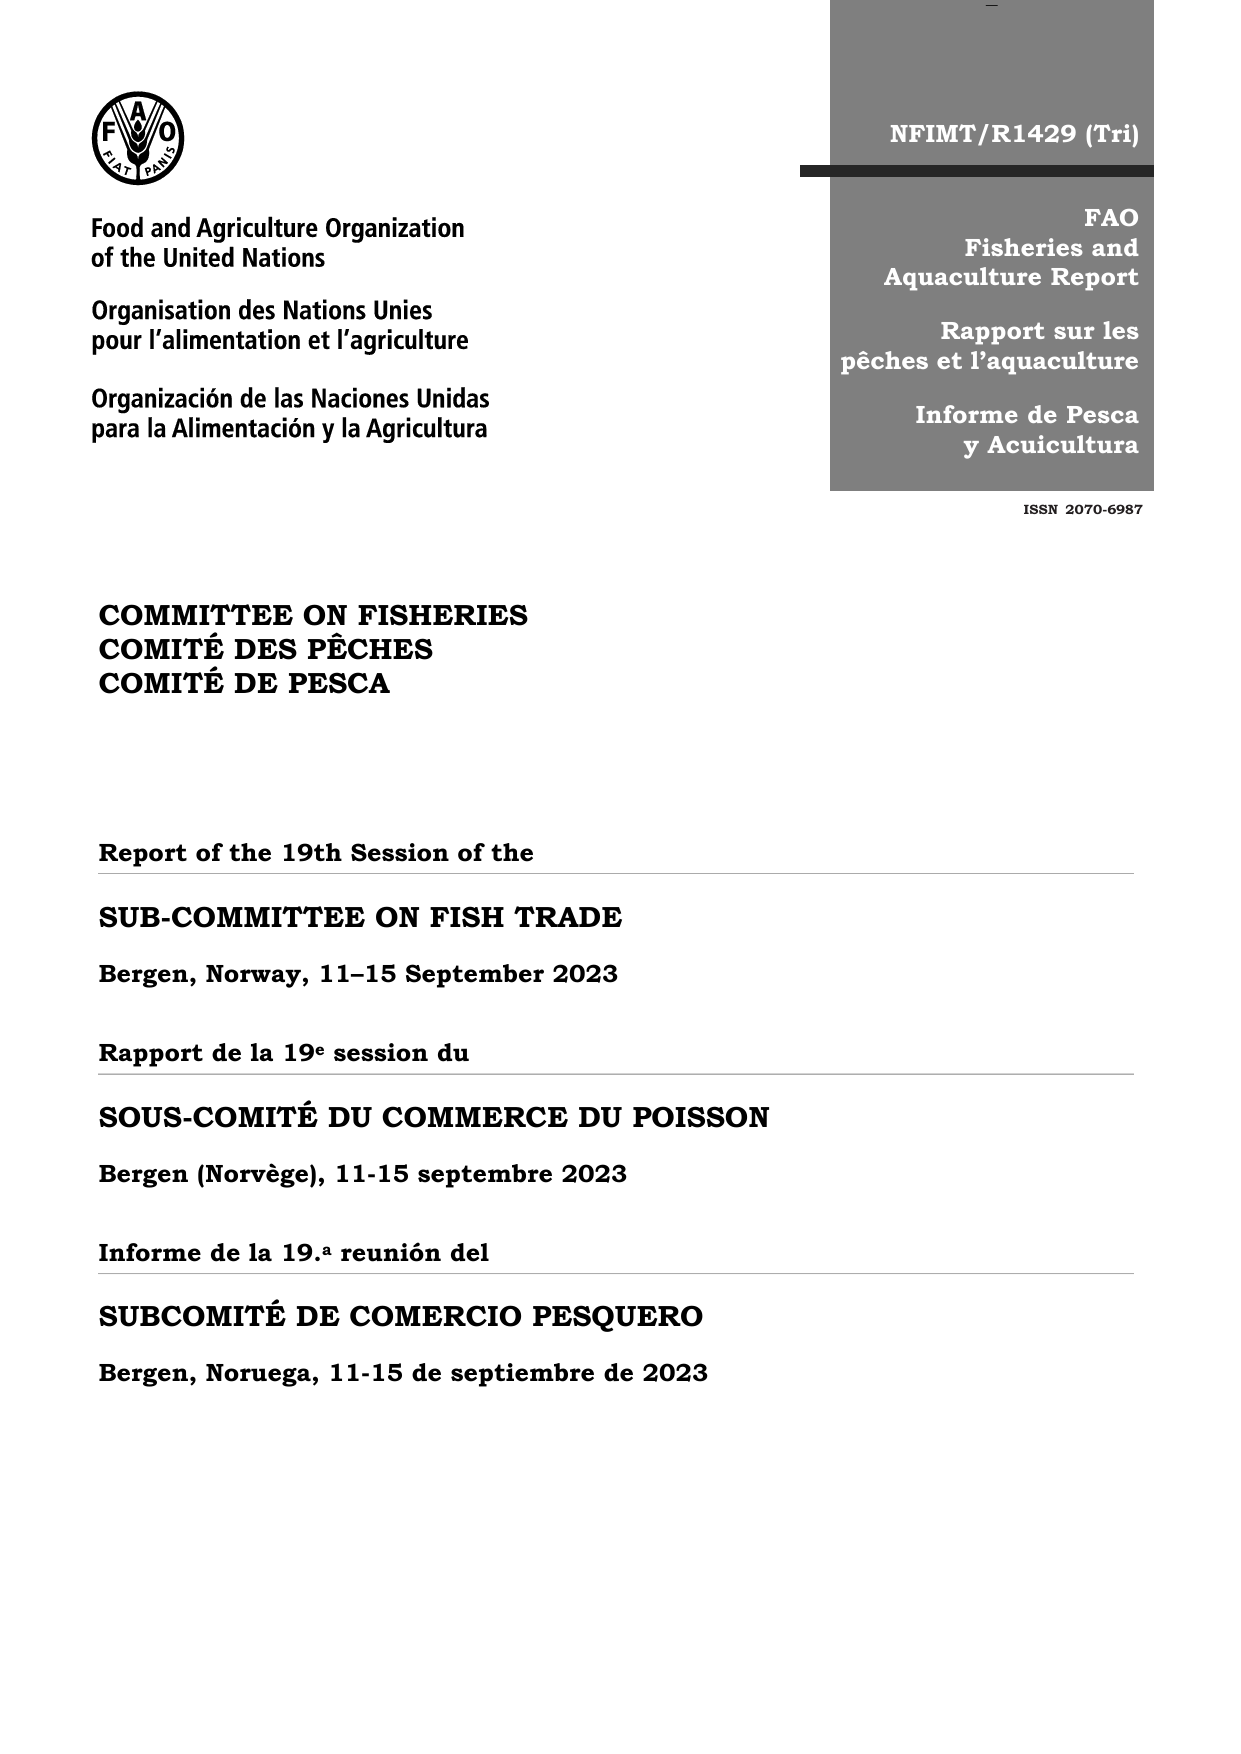 《渔业委员会鱼品贸易分委员会第十九届会议报告 — 挪威卑尔根，2023年9月11–15日》英文版.pdf